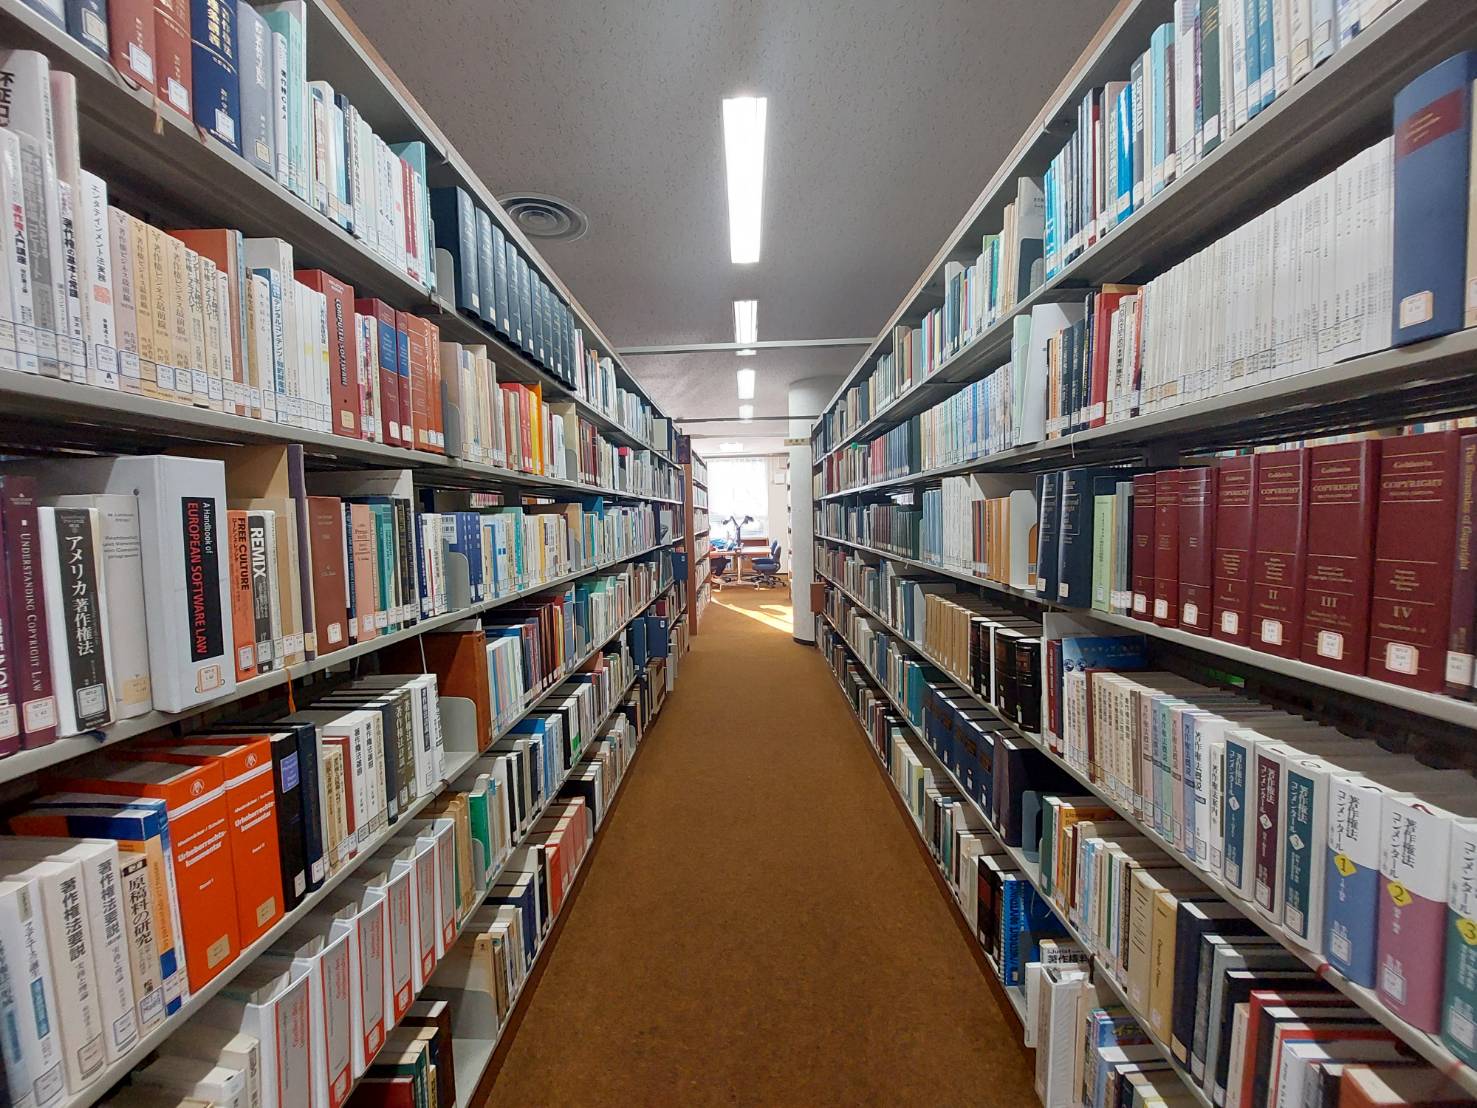 筑波大学附属図書館・図書館情報学図書館の蔵書。図書館資料のオンライン活用を可能とするための著作権制度のあり方について研究しています。